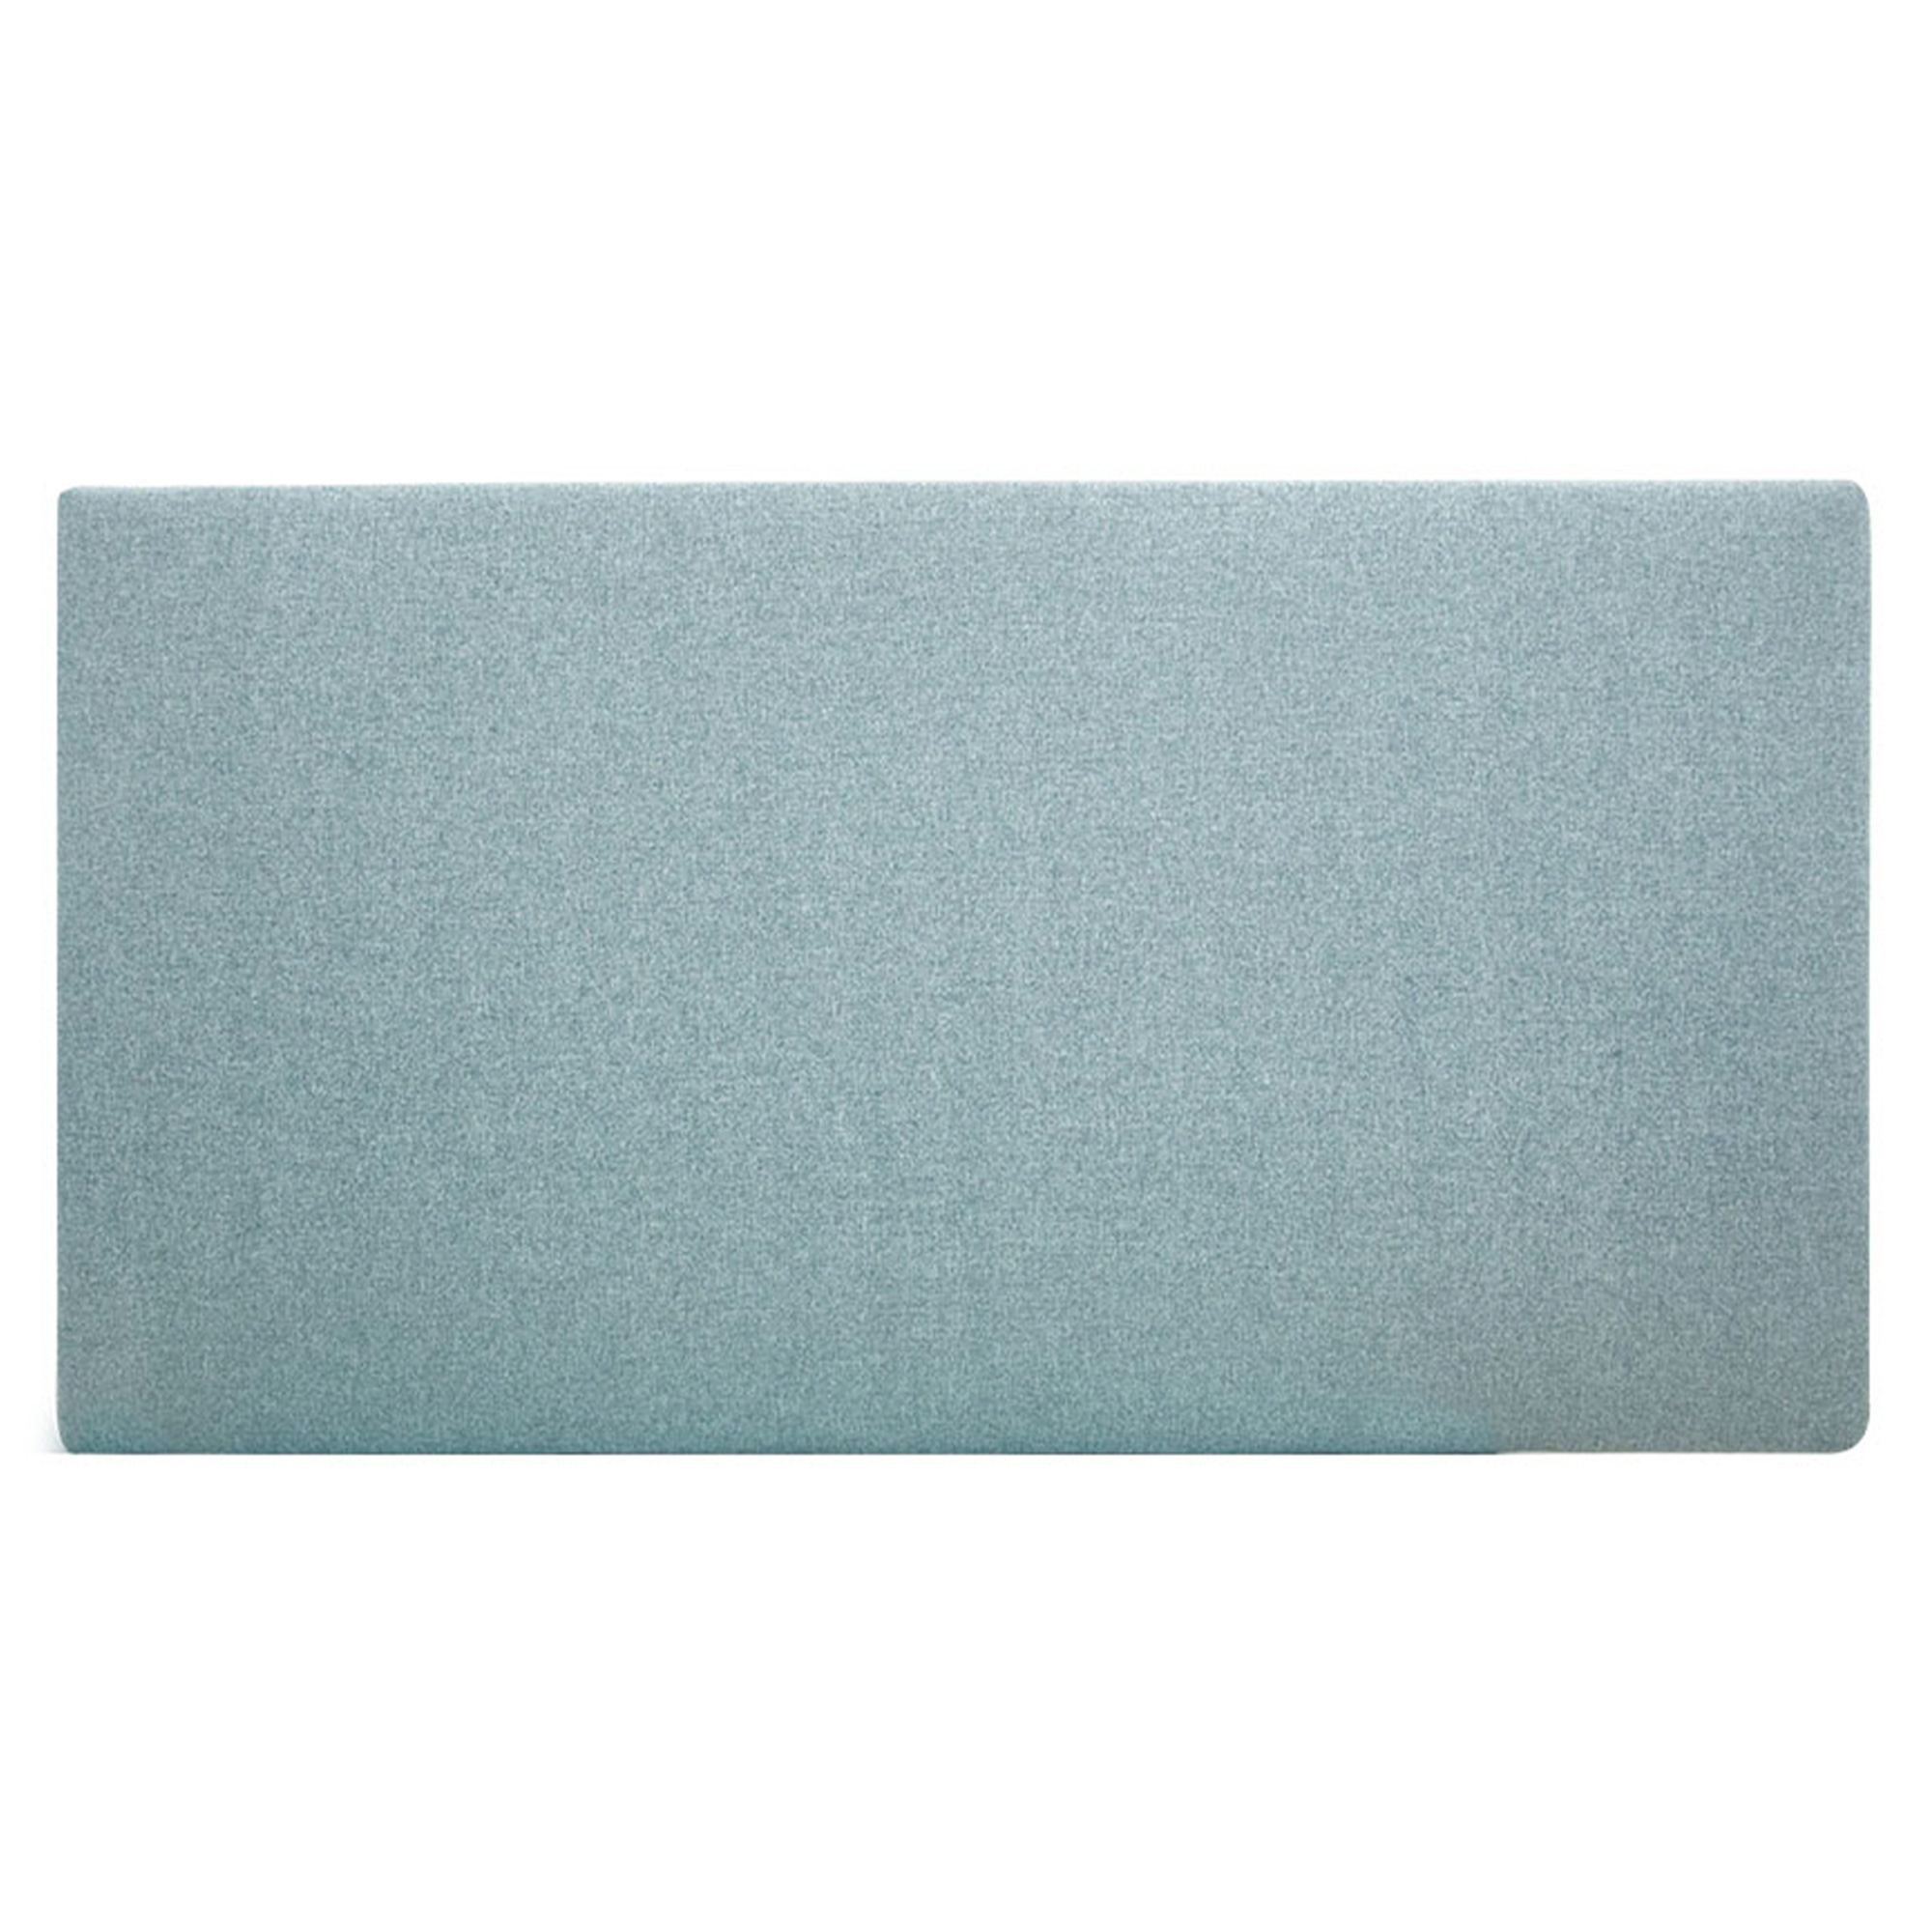 Tête de lit polyester lisse couleur bleu-verte 200x80cm